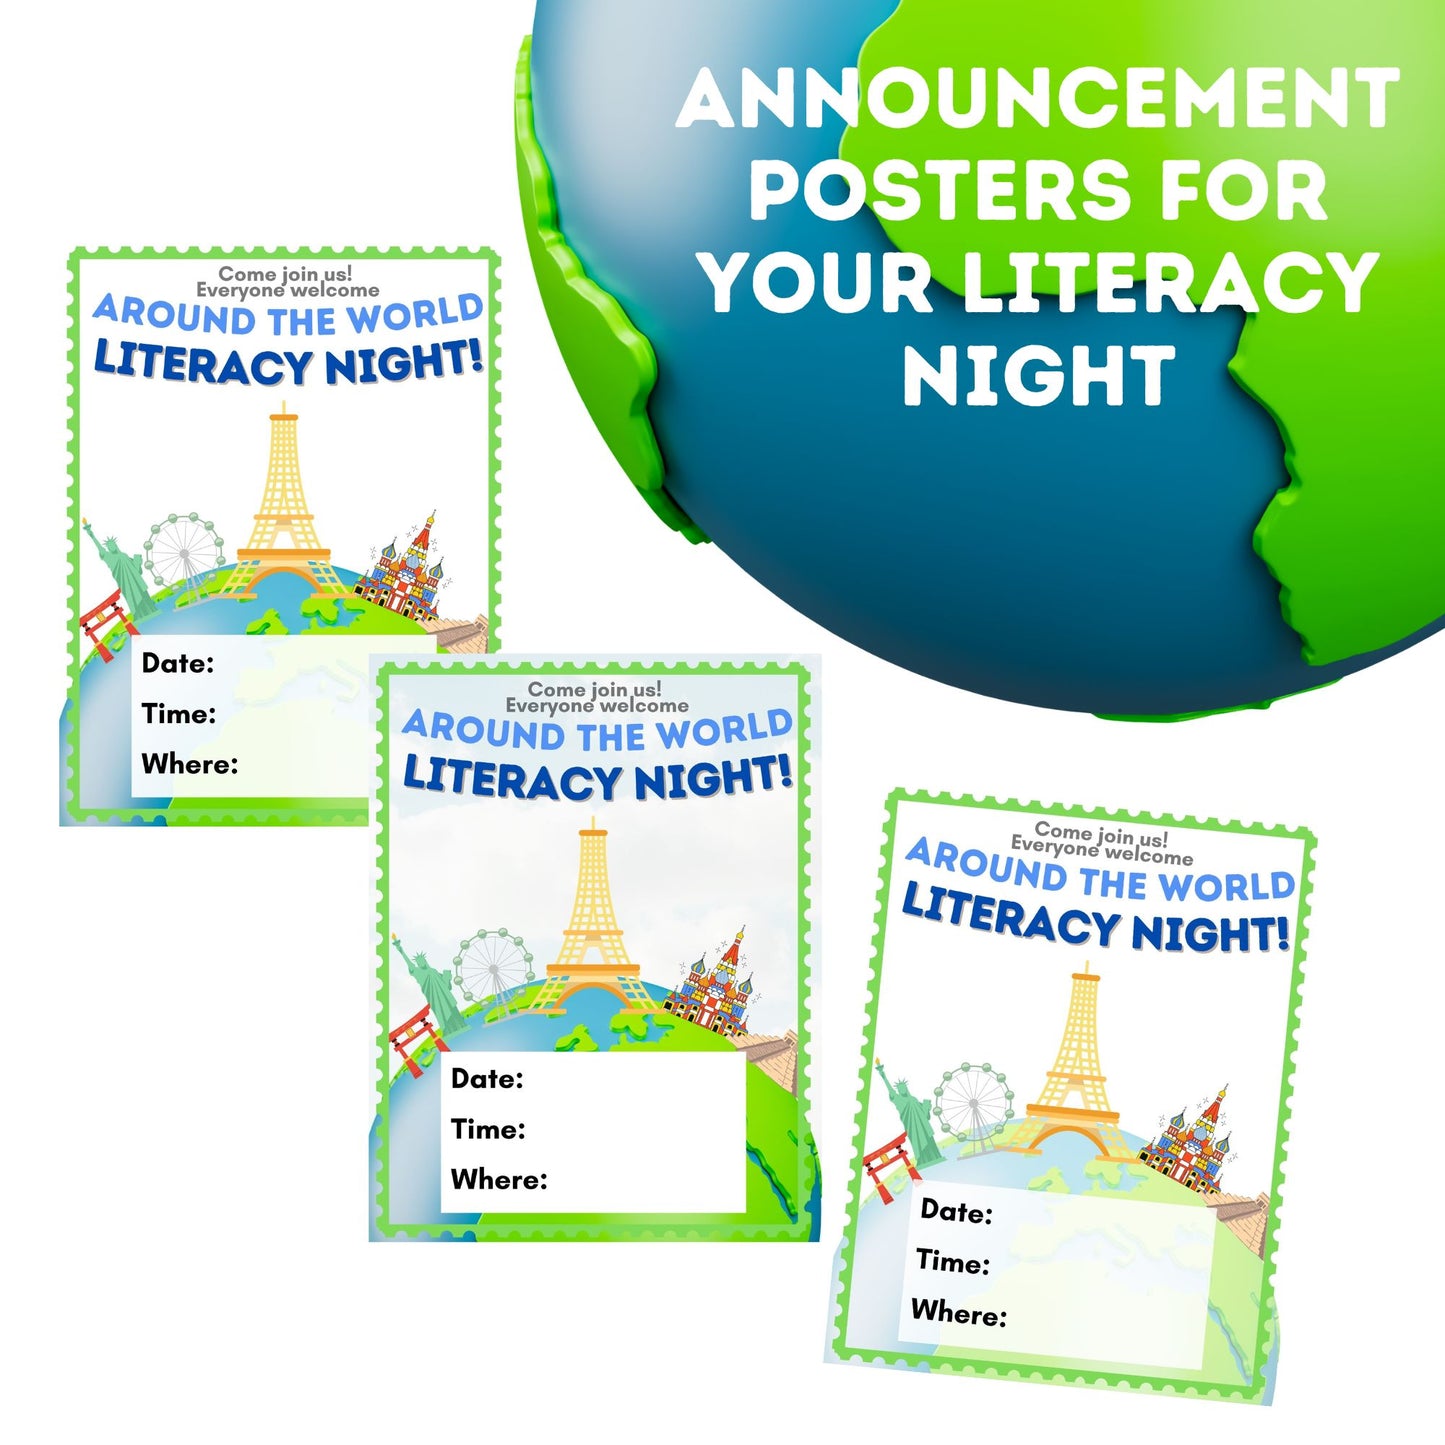 Around the World Literacy Night